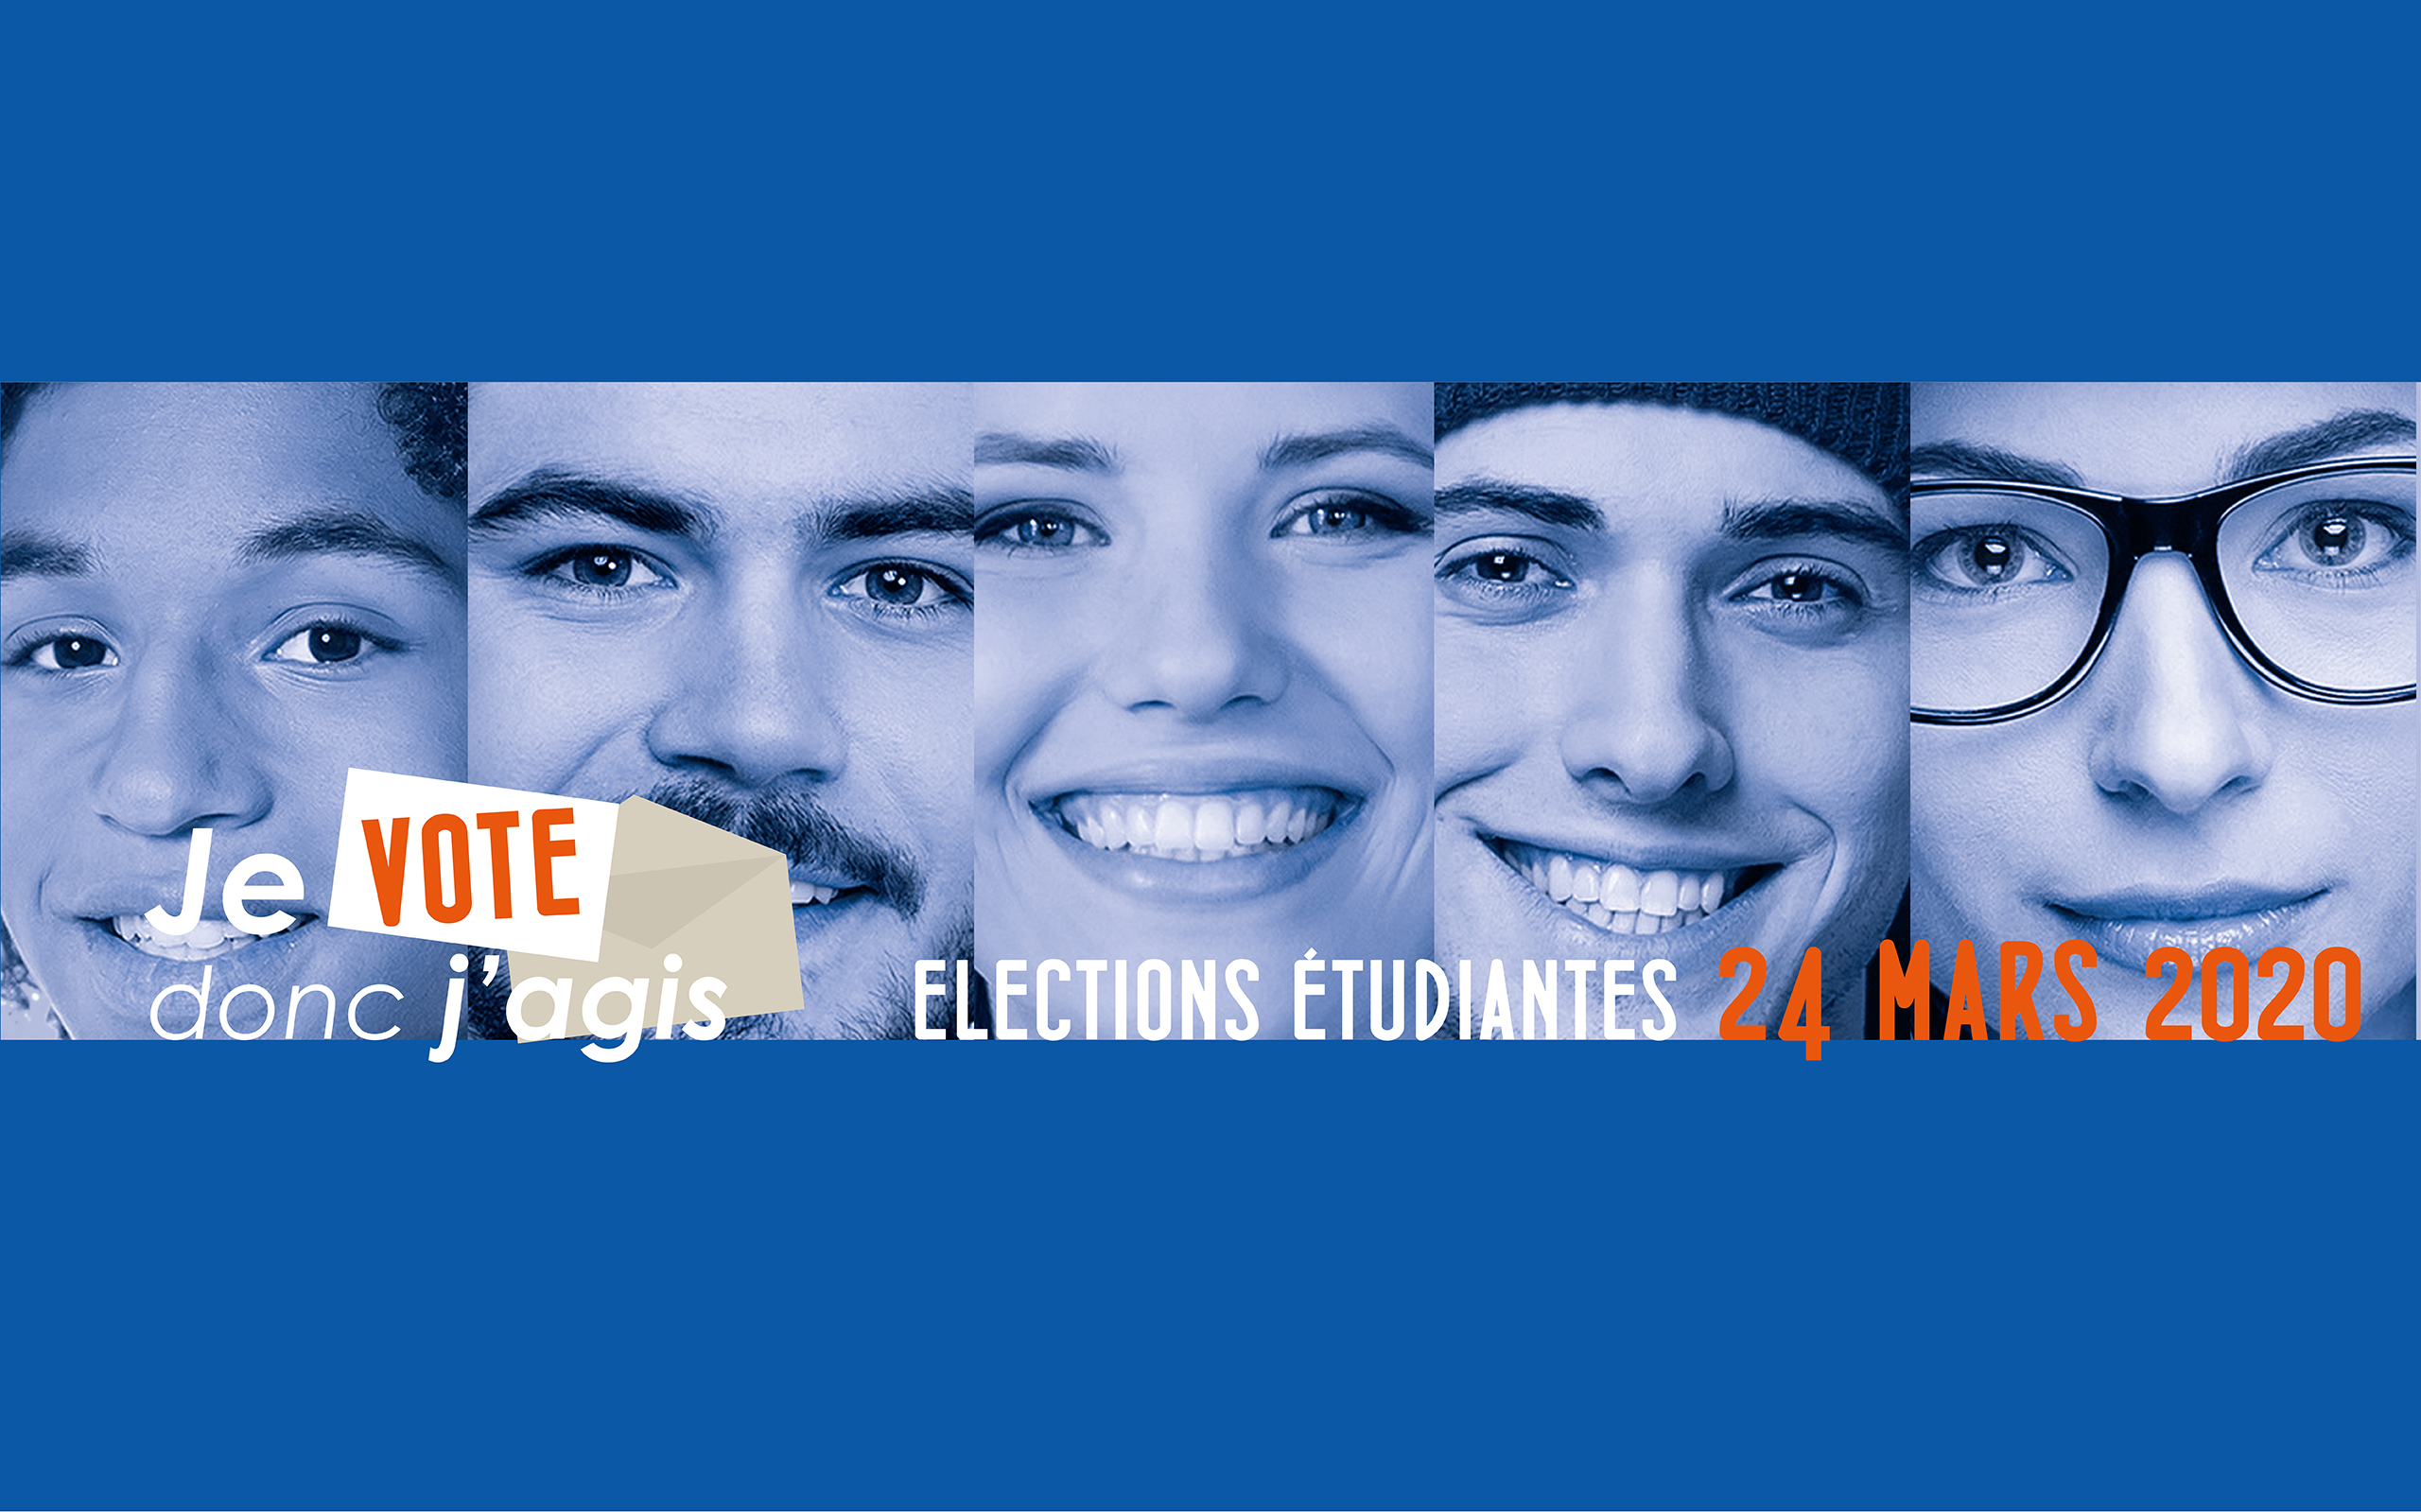 Elections étudiantes  - Université d'Orléans